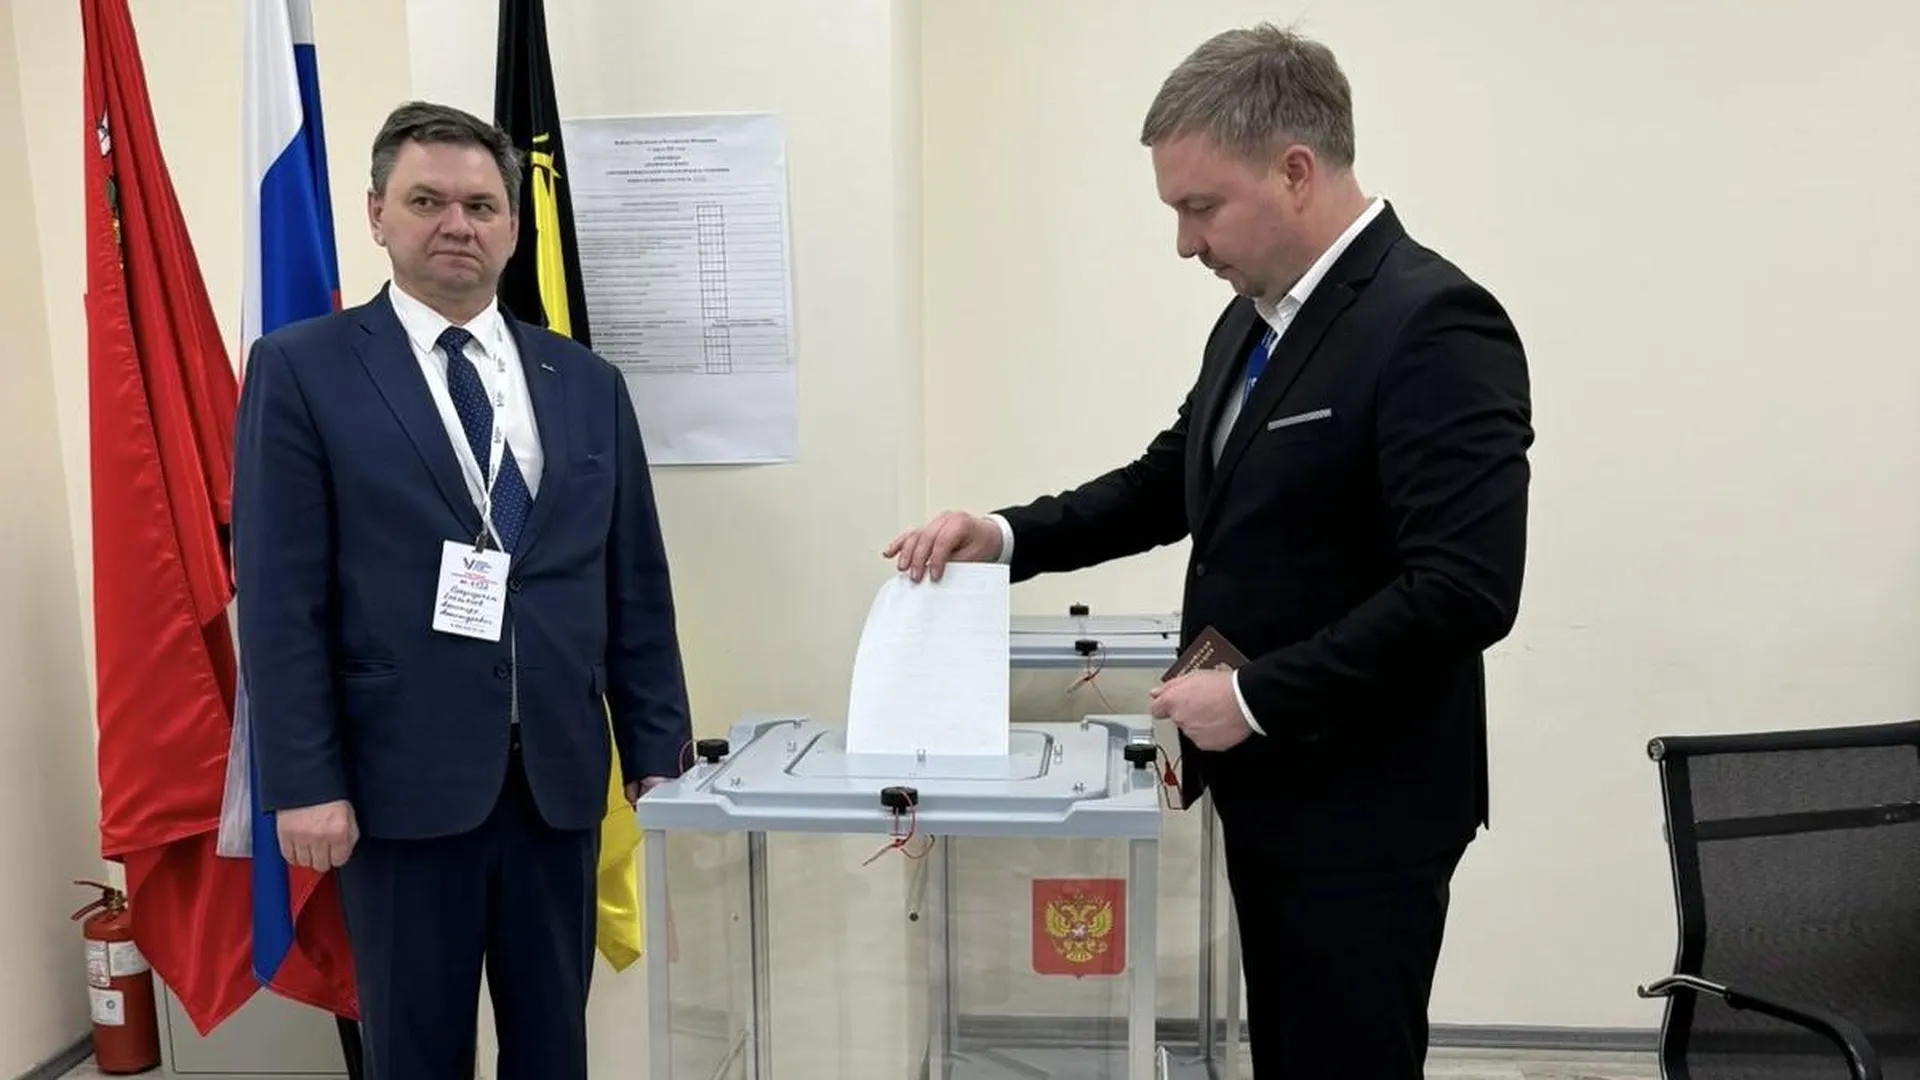 Пассажиры аэропорта Шереметьево смогут в терминале В проголосовать на выборах президента